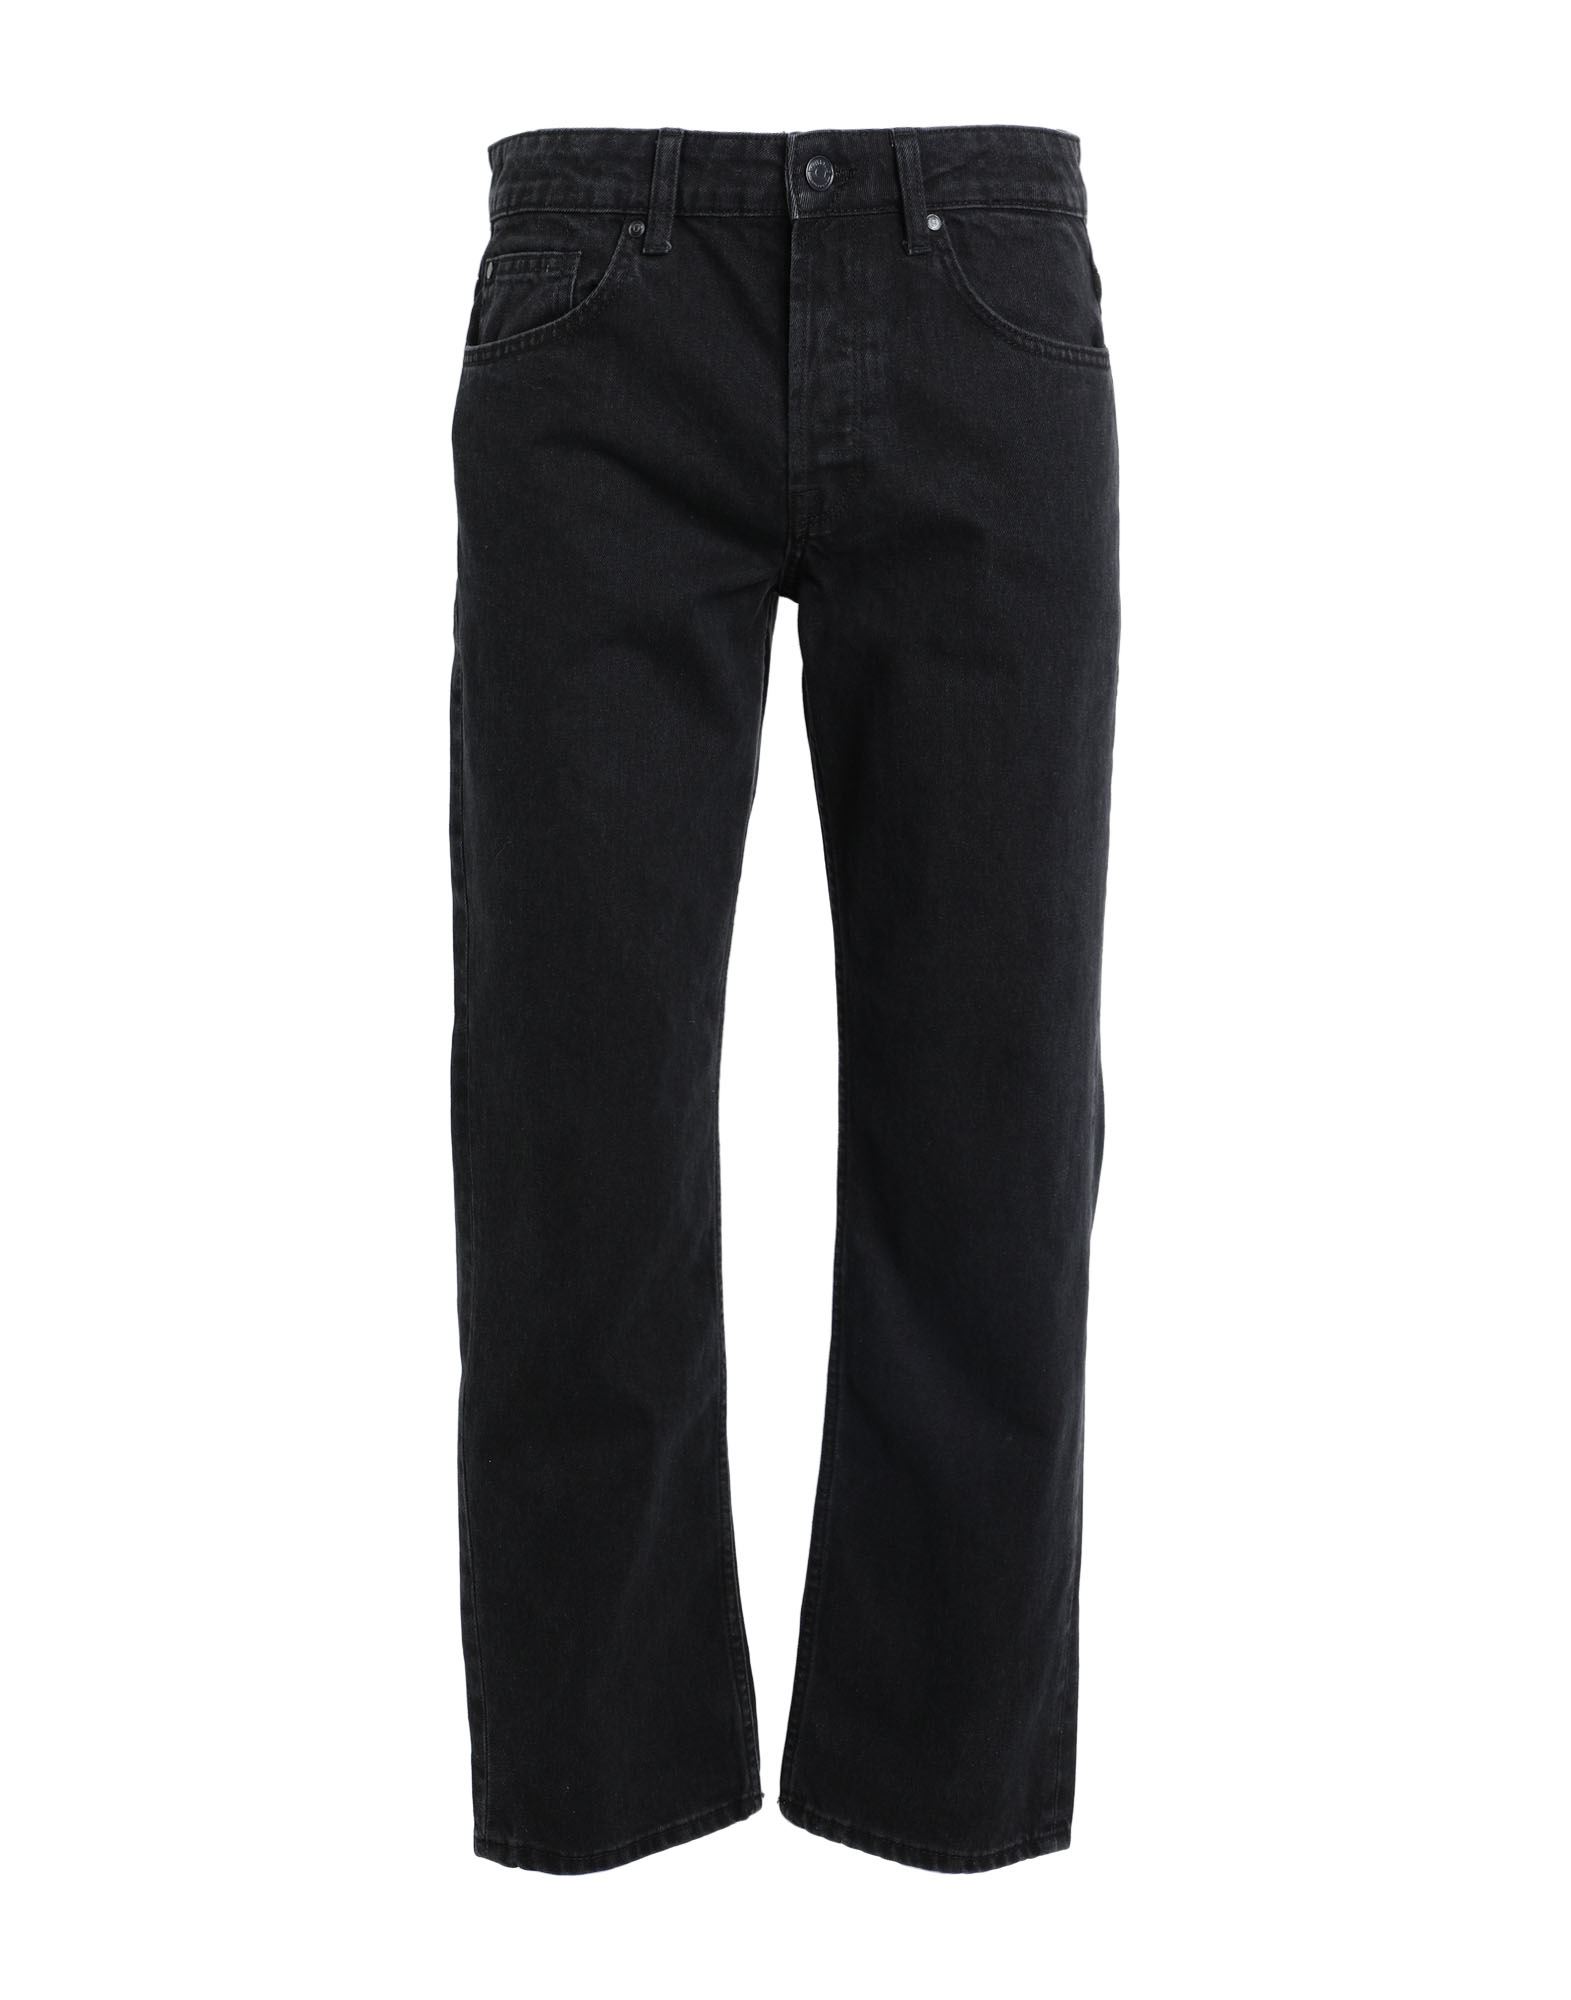 Only & Sons Man Denim Pants Black Size 33w-32l Cotton